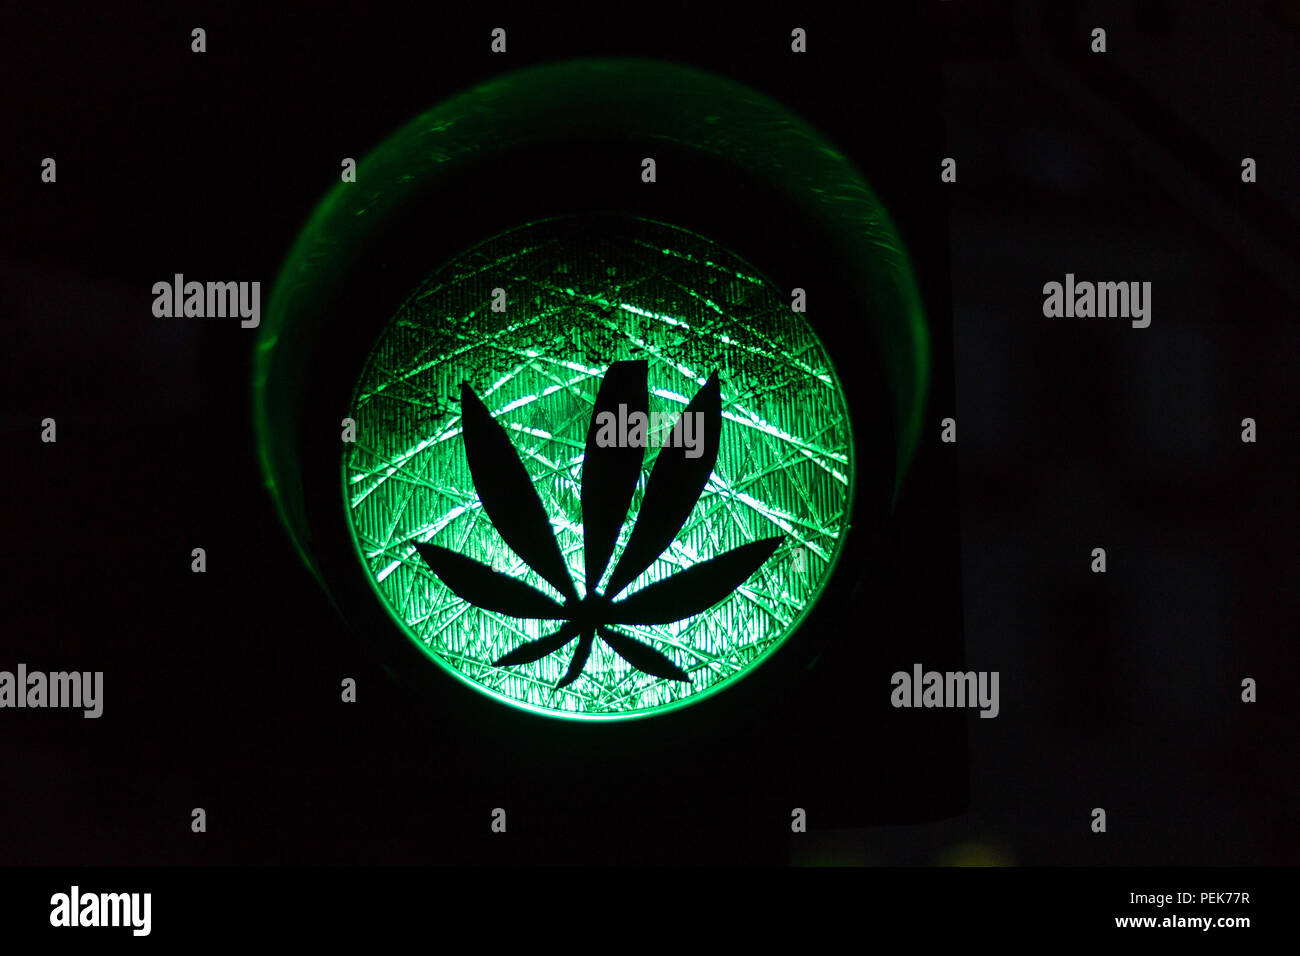 Ein Aufkleber einer Anlage auf eine grüne Ampel als Symbol für die  Legalisierung von Cannabis oder Marihuana Stockfotografie - Alamy